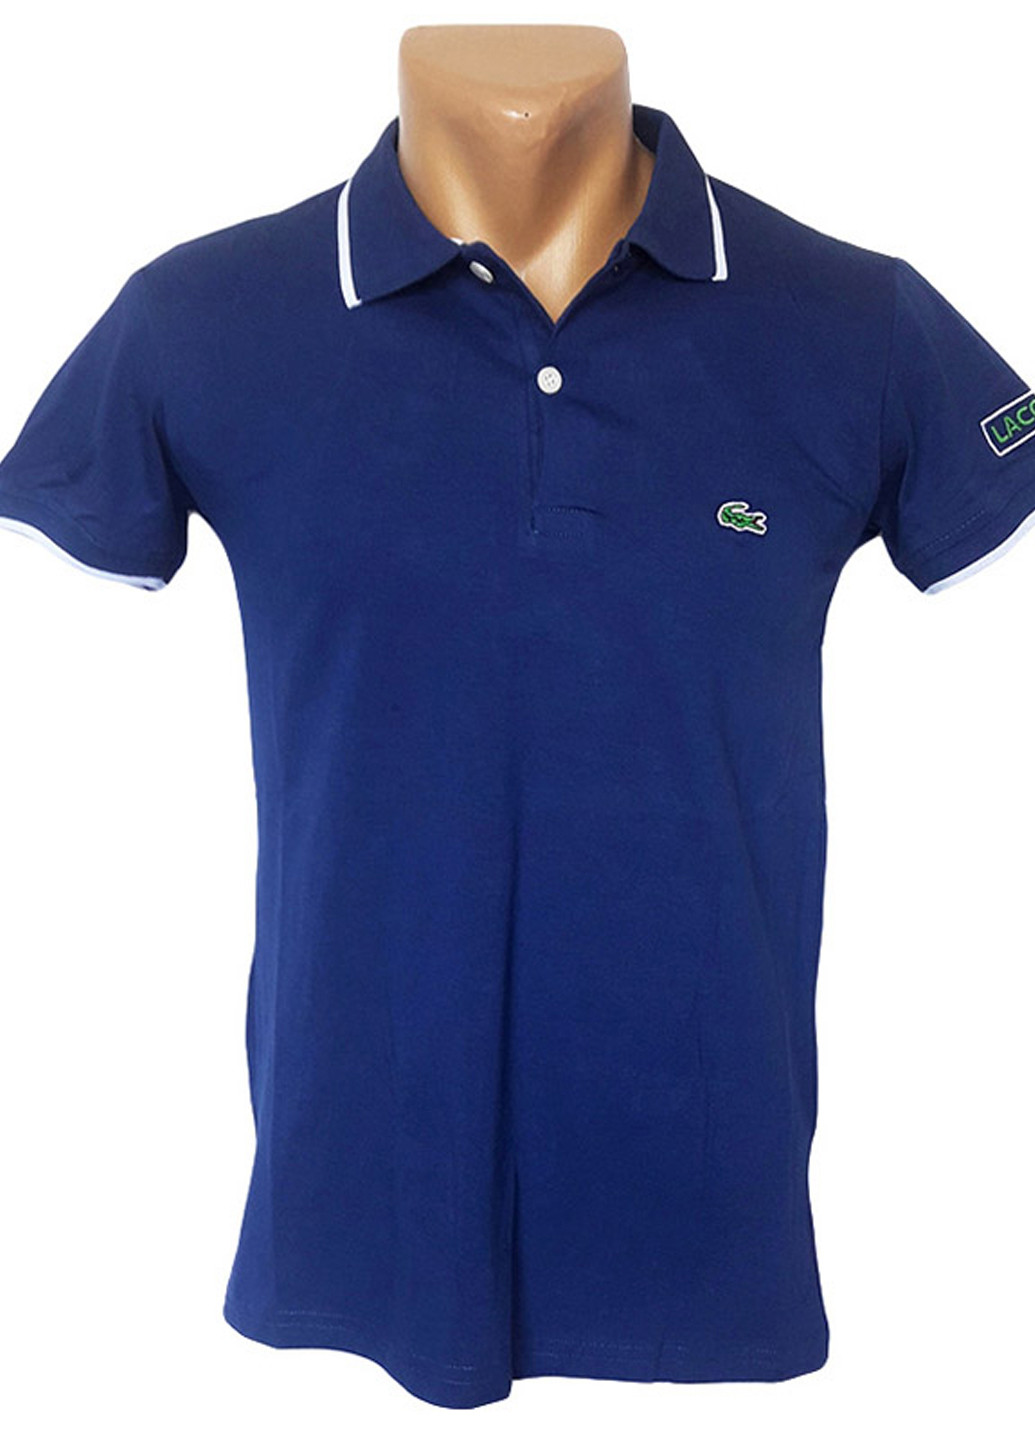 Синя футболка чоловіча з коротким рукавом Sport Line